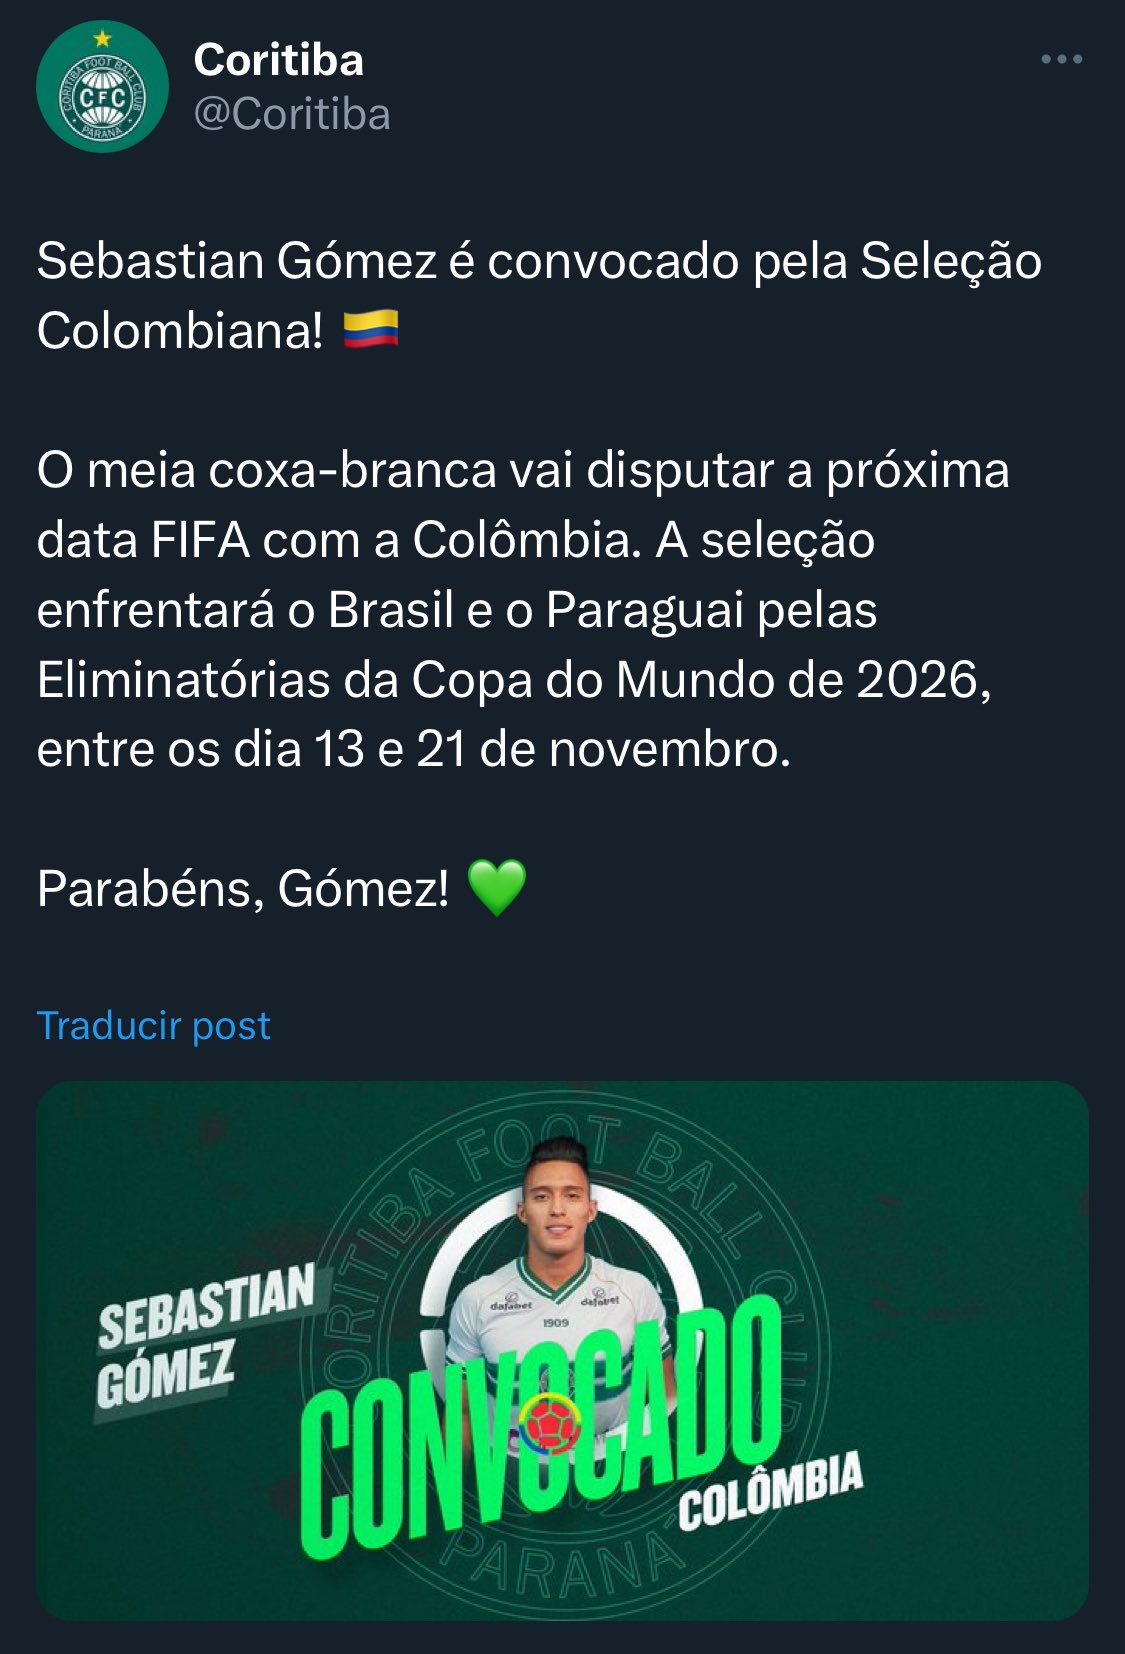 Coritiba confirma que Sebastián Gómez fue convocado a Selección Colombia